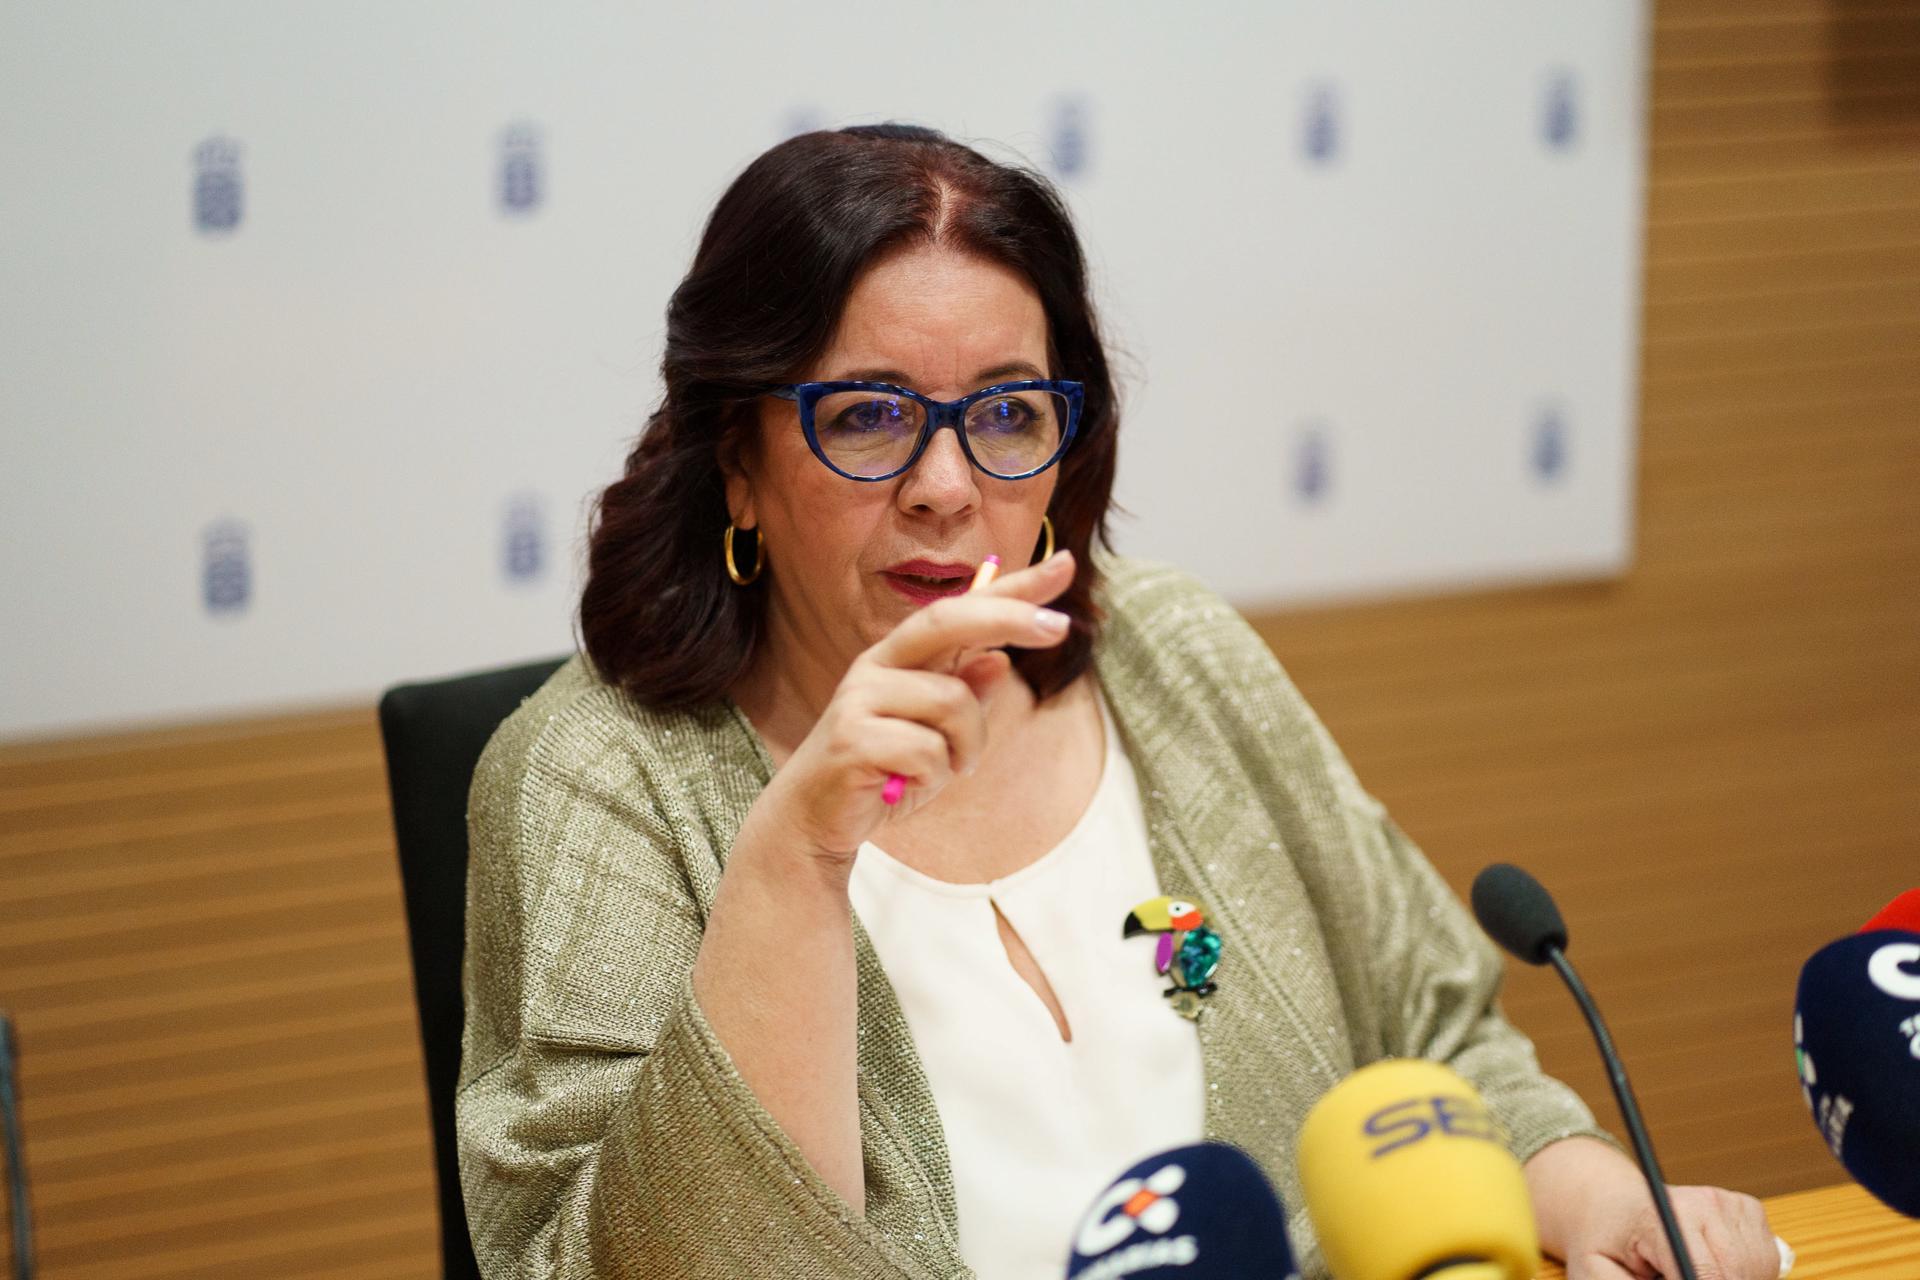 La consejera de Educación del Gobierno de Canarias, Manuela Armas, durante la rueda de prensa que ofreció este miércoles para explicar el nuevo modelo de financiación plurianual de las universidades públicas de las islas. EFE/Ramón de la Rocha